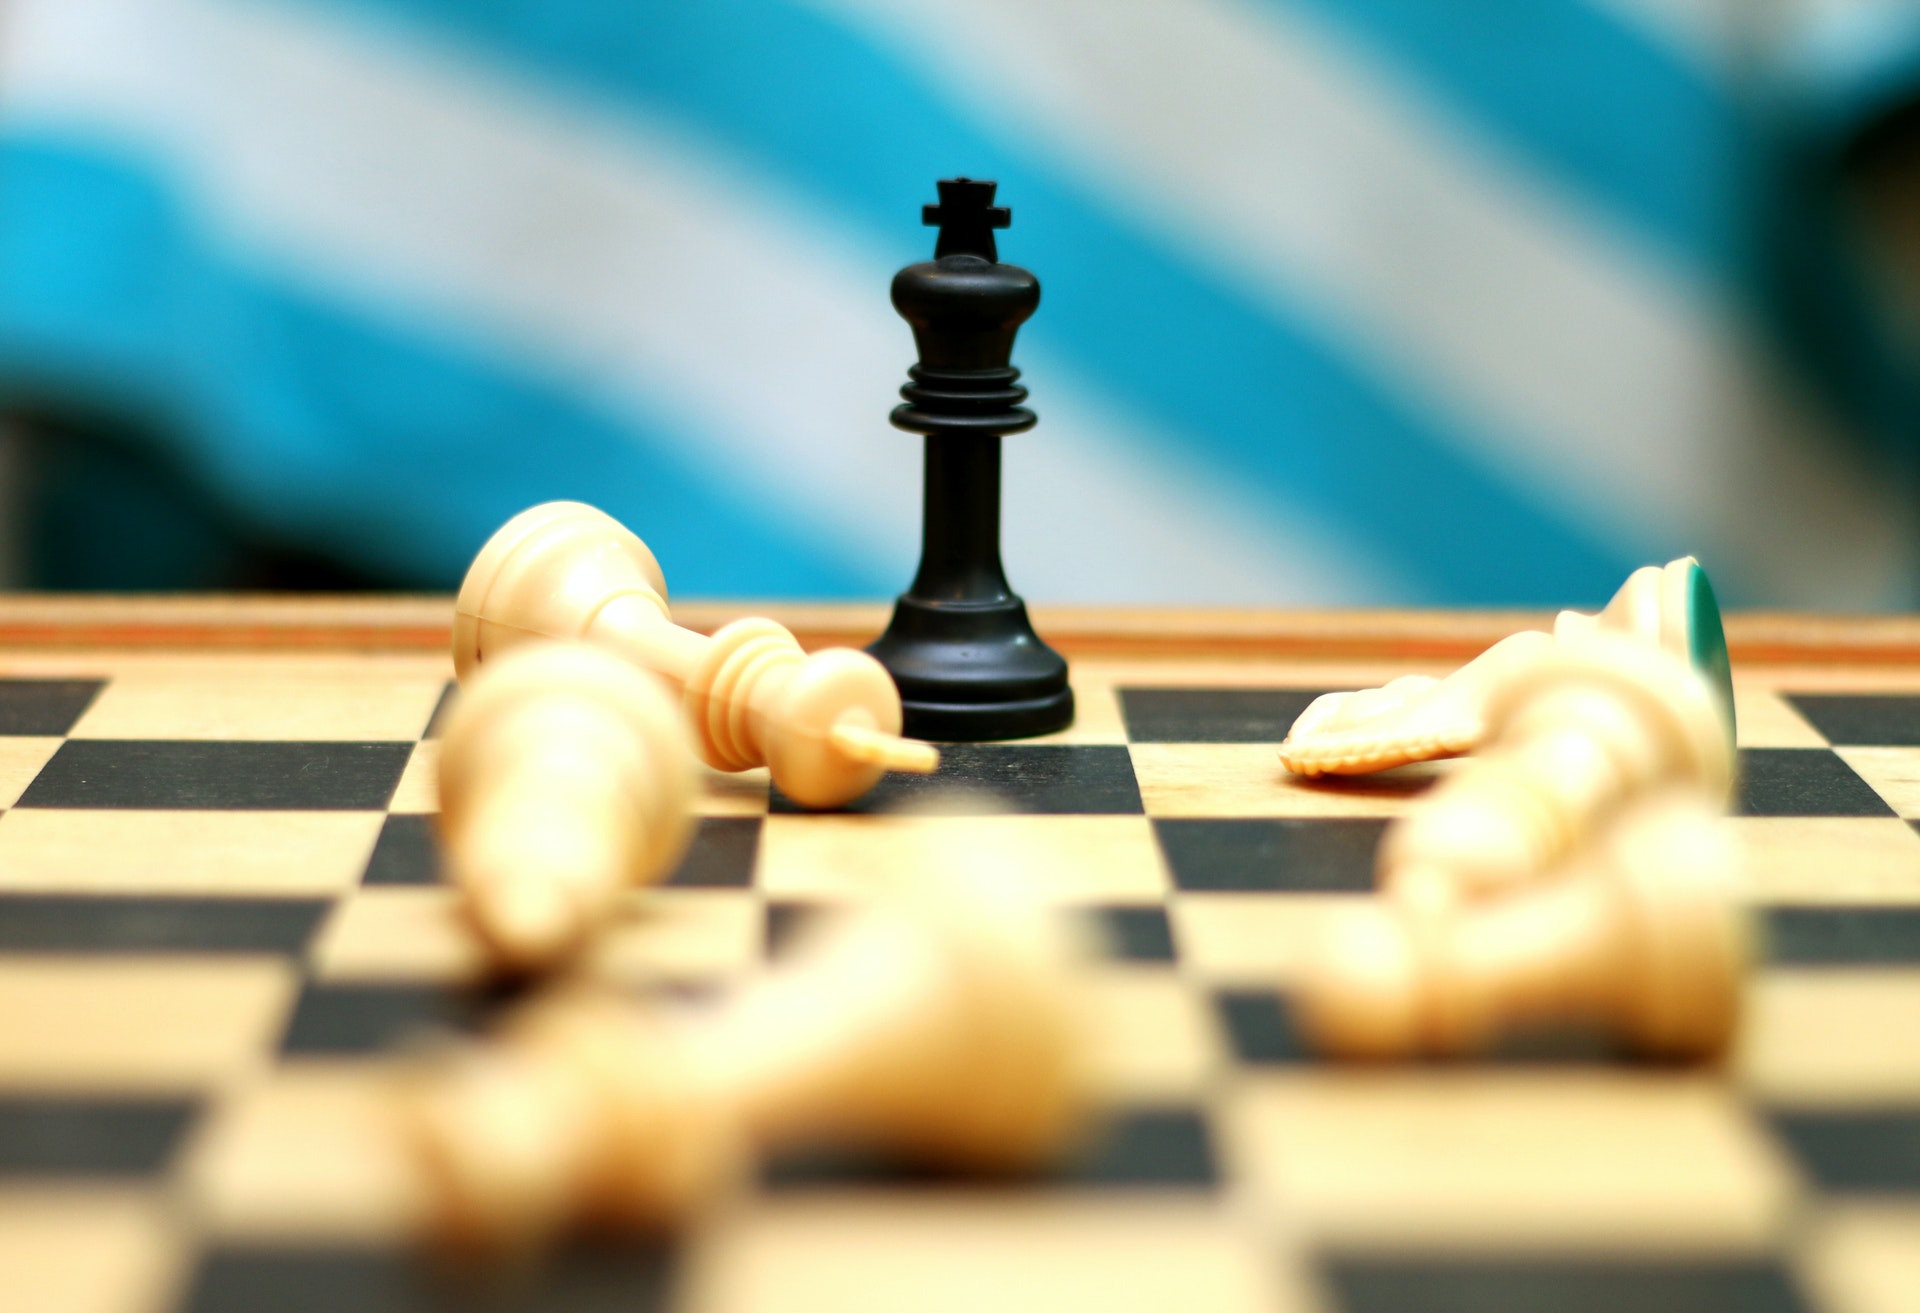 Norway Chess 2021: Carlsen Muito à Frente de Nepo